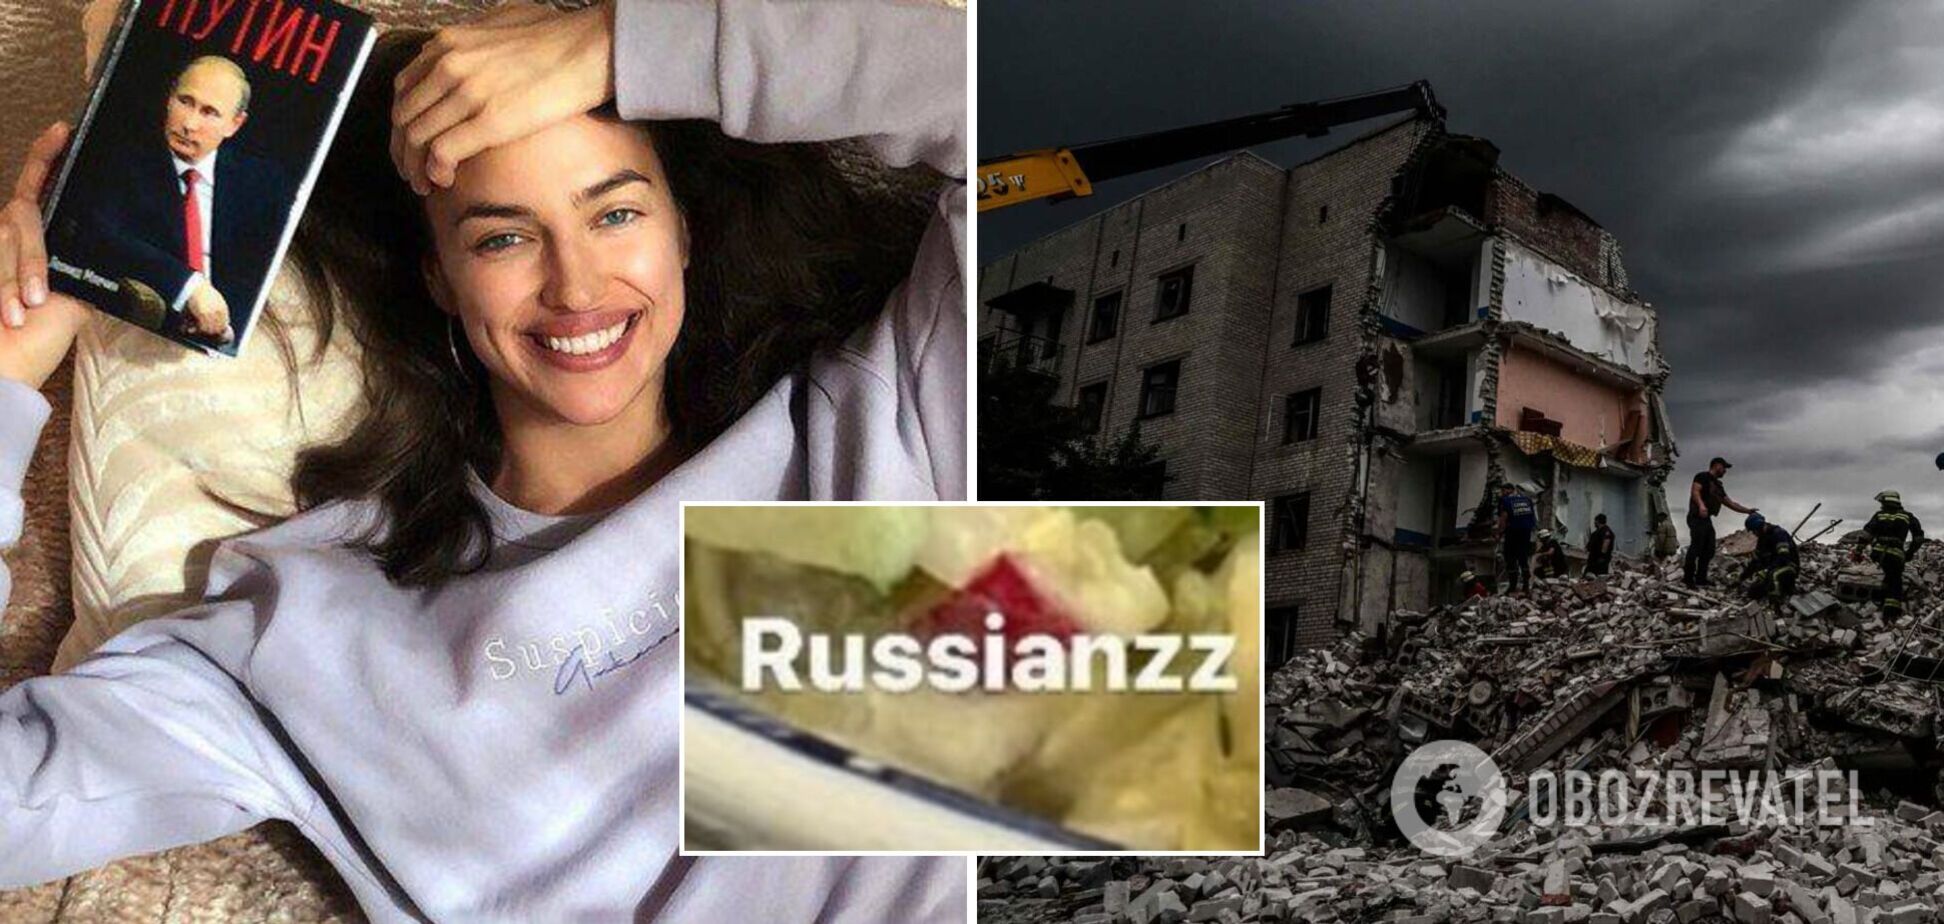 Російська супермодель Ірина Шейк потрапила в гучний скандал через фото з буквою Z – символом війни